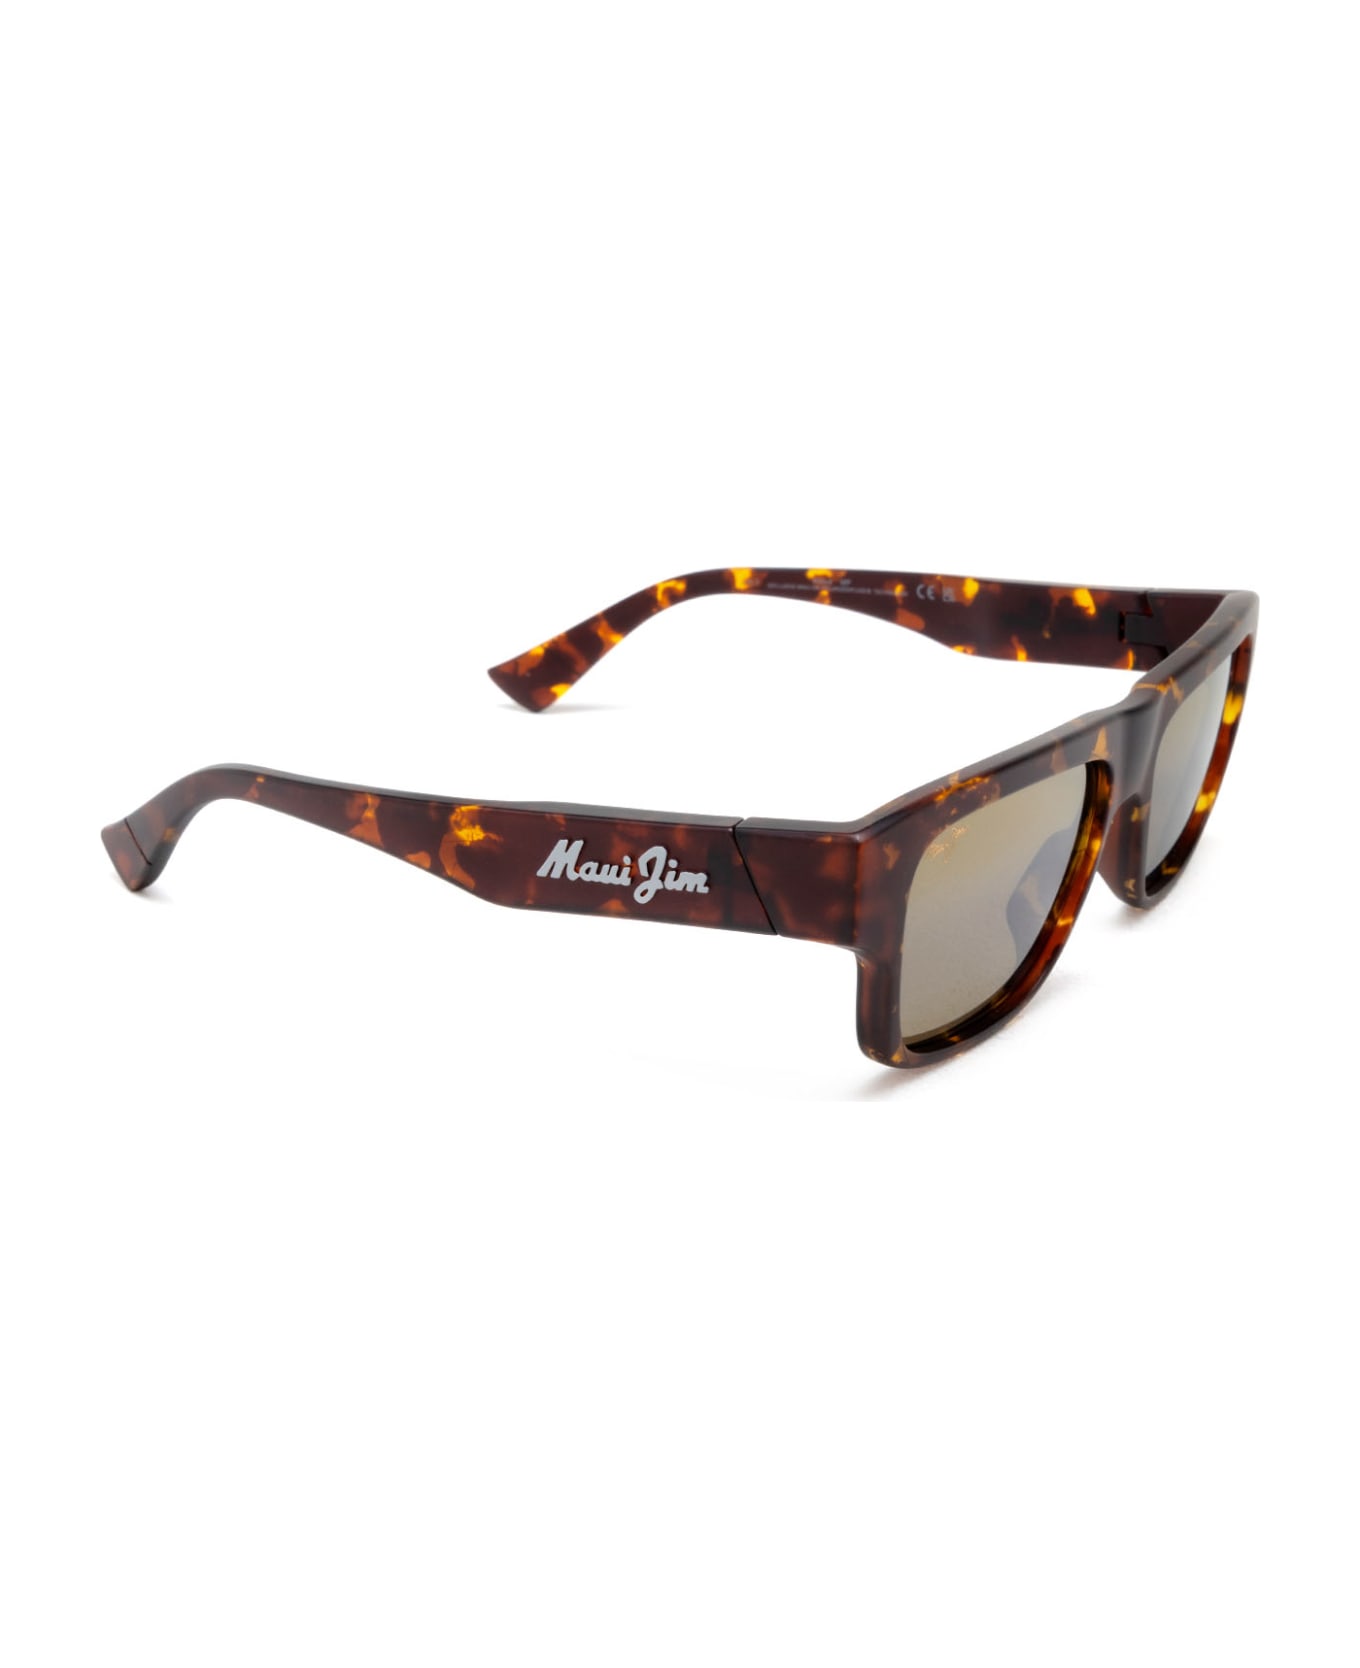 Maui Jim Mj0638s Matte Dark Havana Sunglasses - Matte Dark Havana